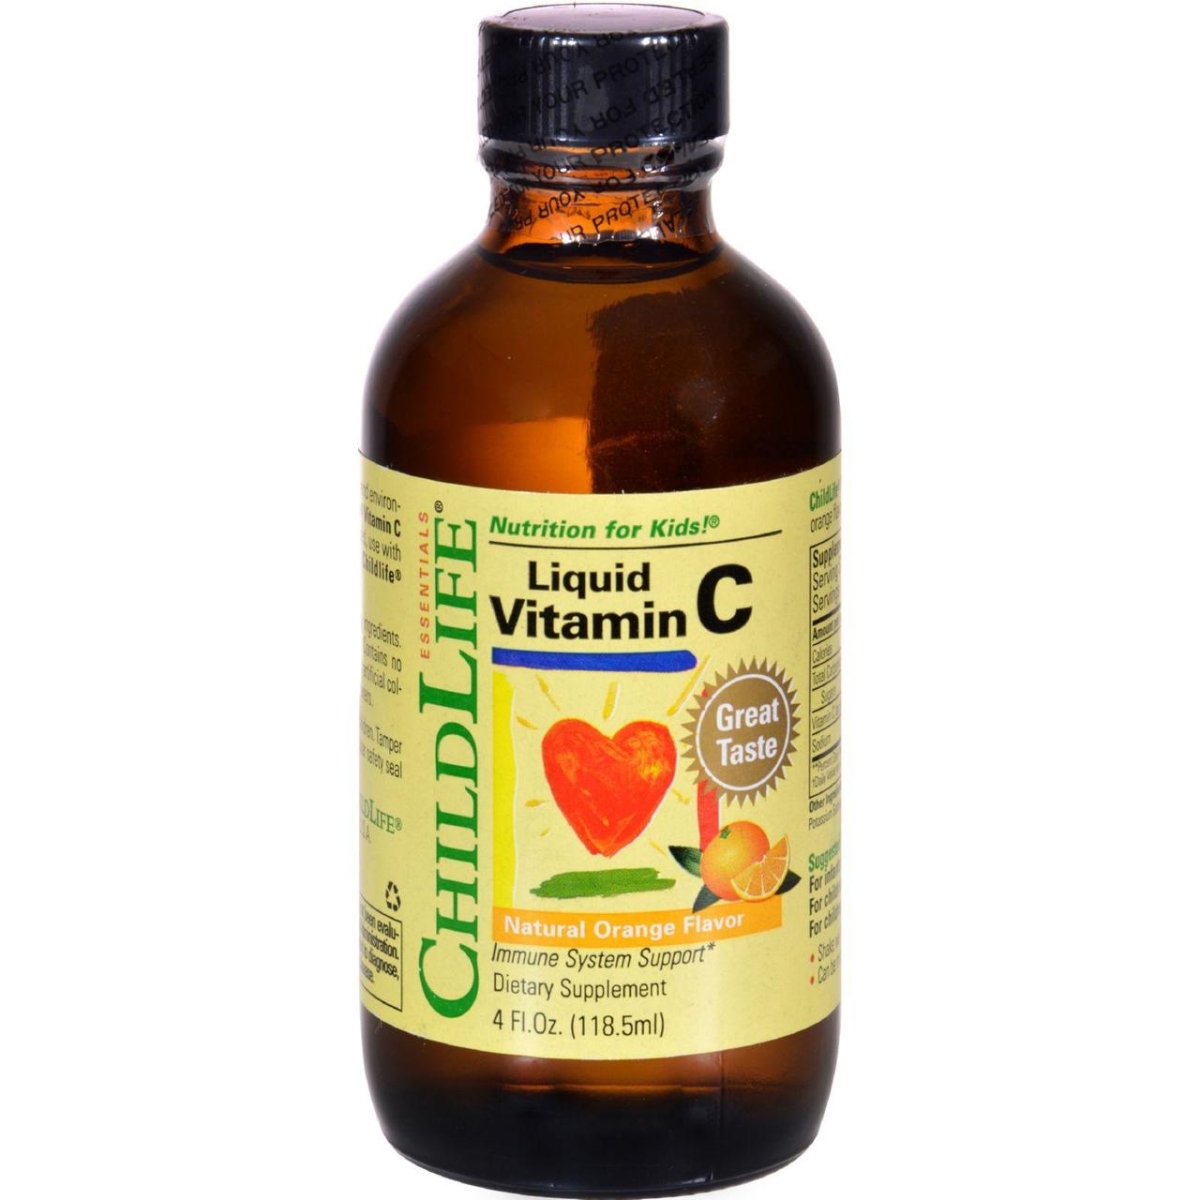 Child Life Hg0408799 4 Fl Oz Vitamin C Liquid - Orange